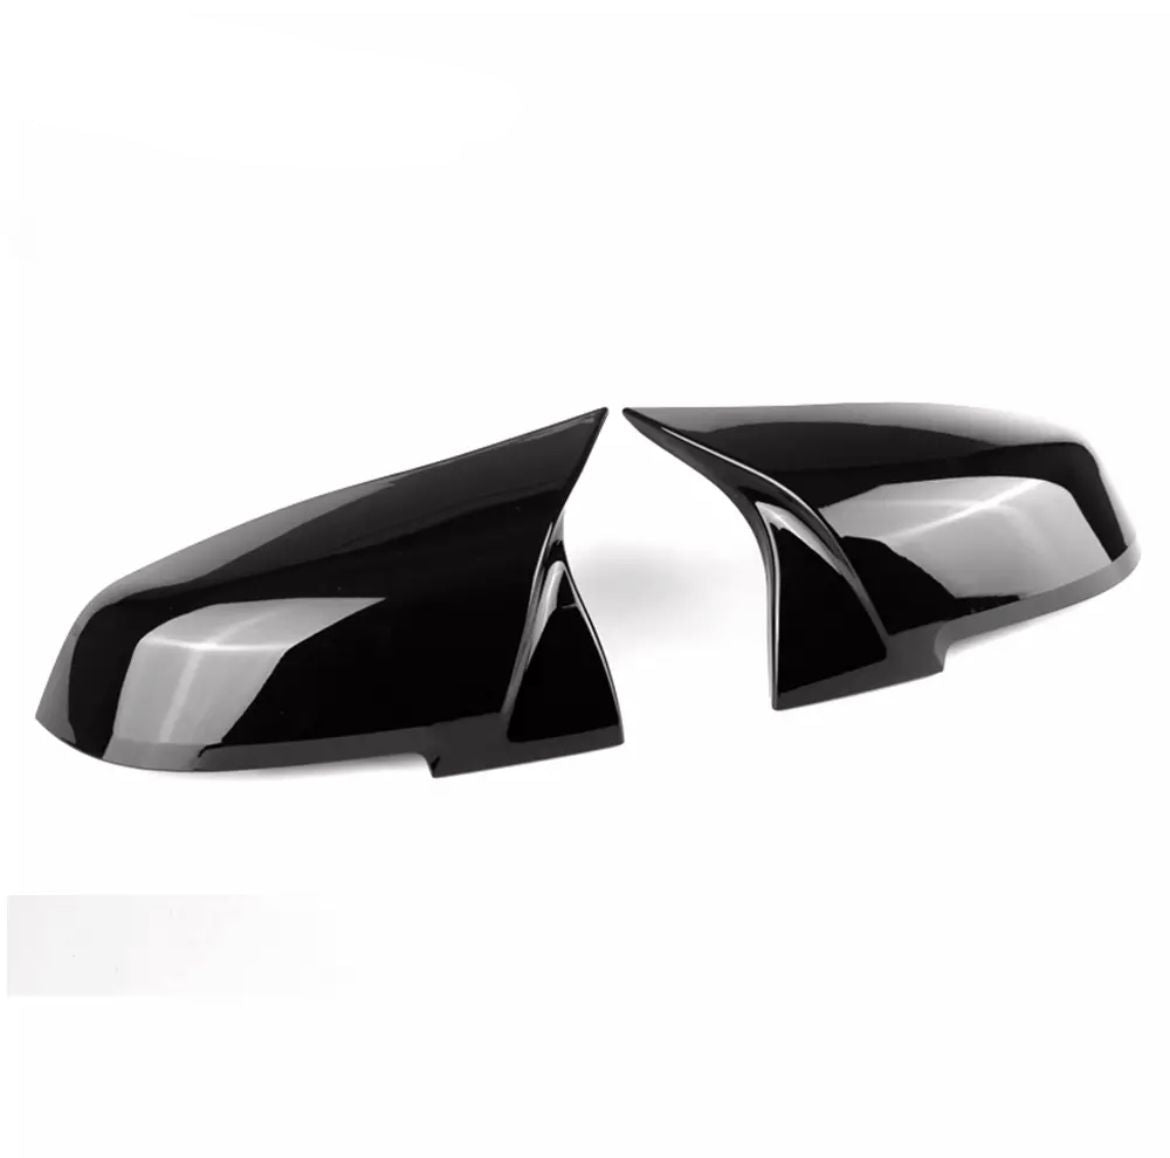 Coques de rétroviseurs look M3 noir brillant pour BMW série 1 E81 E82 –  Carsmatic - Accessoires